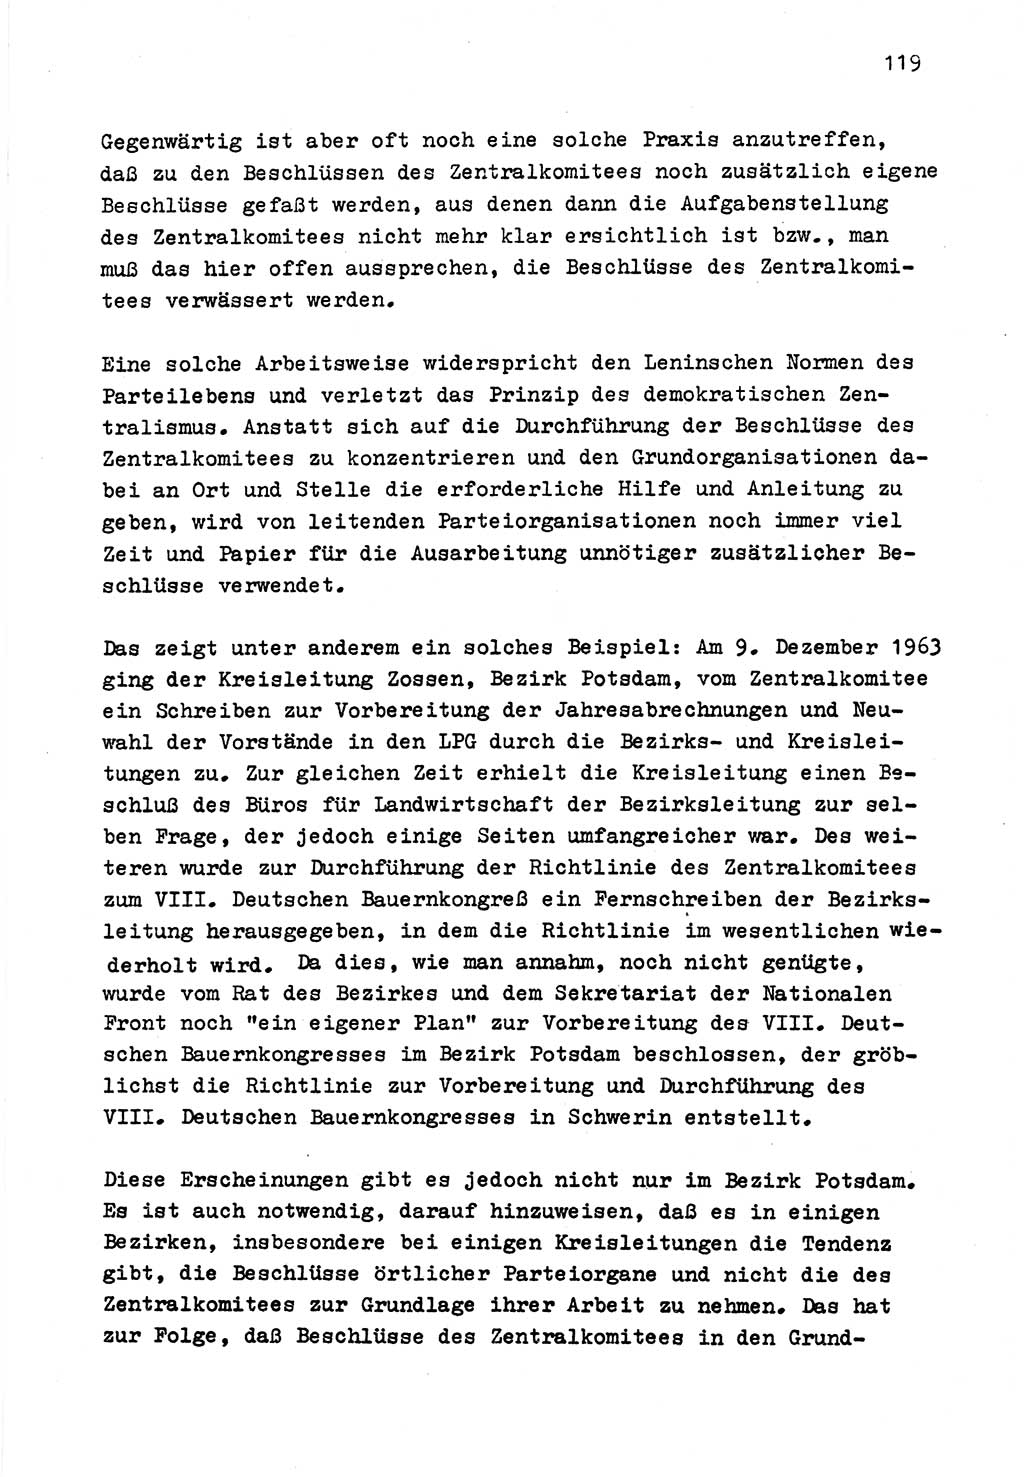 Zu Fragen der Parteiarbeit [Sozialistische Einheitspartei Deutschlands (SED) Deutsche Demokratische Republik (DDR)] 1979, Seite 119 (Fr. PA SED DDR 1979, S. 119)